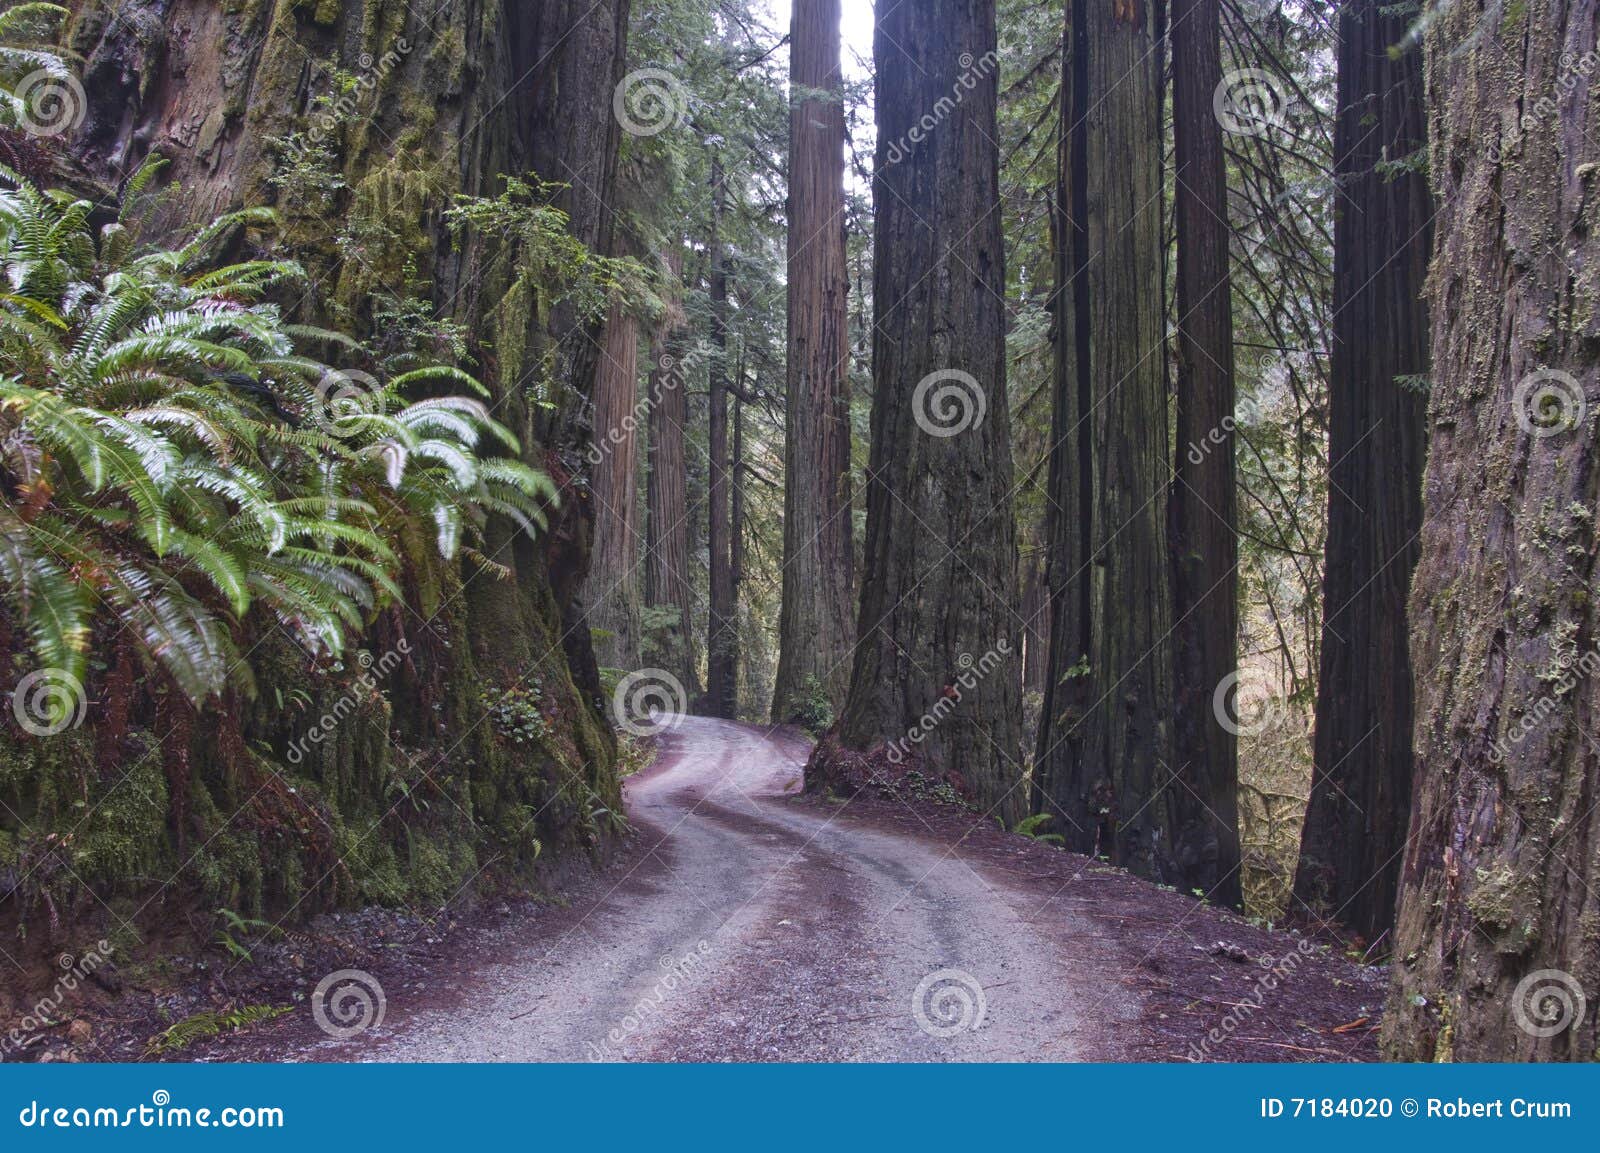 redwoods, redwood national park.